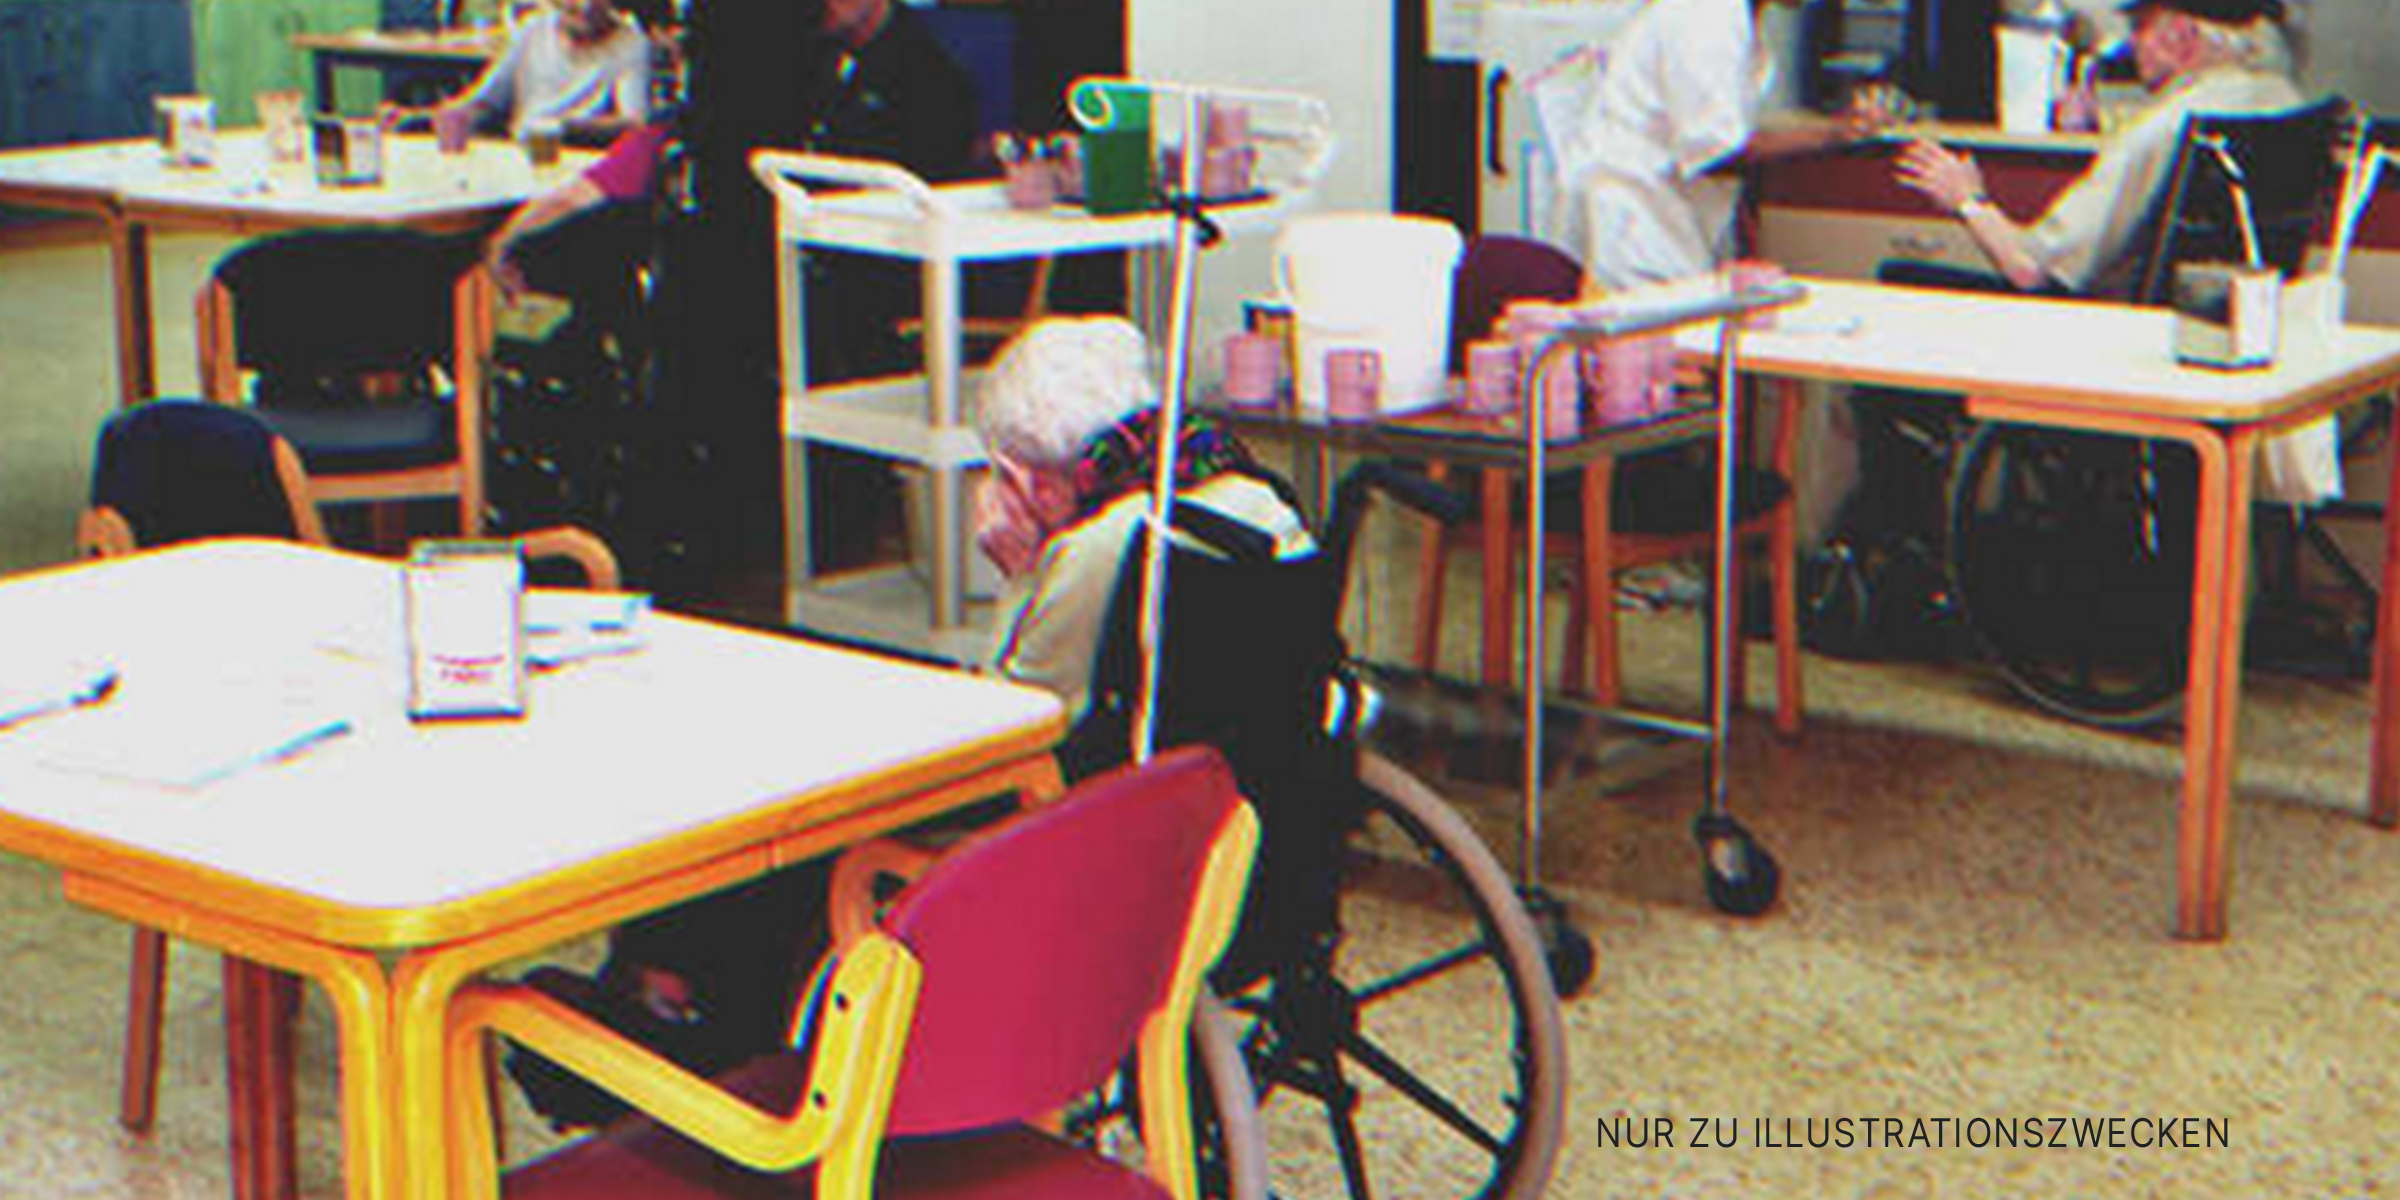 Eine alte Dame in einem Rollstuhl | Quelle: Shutterstock